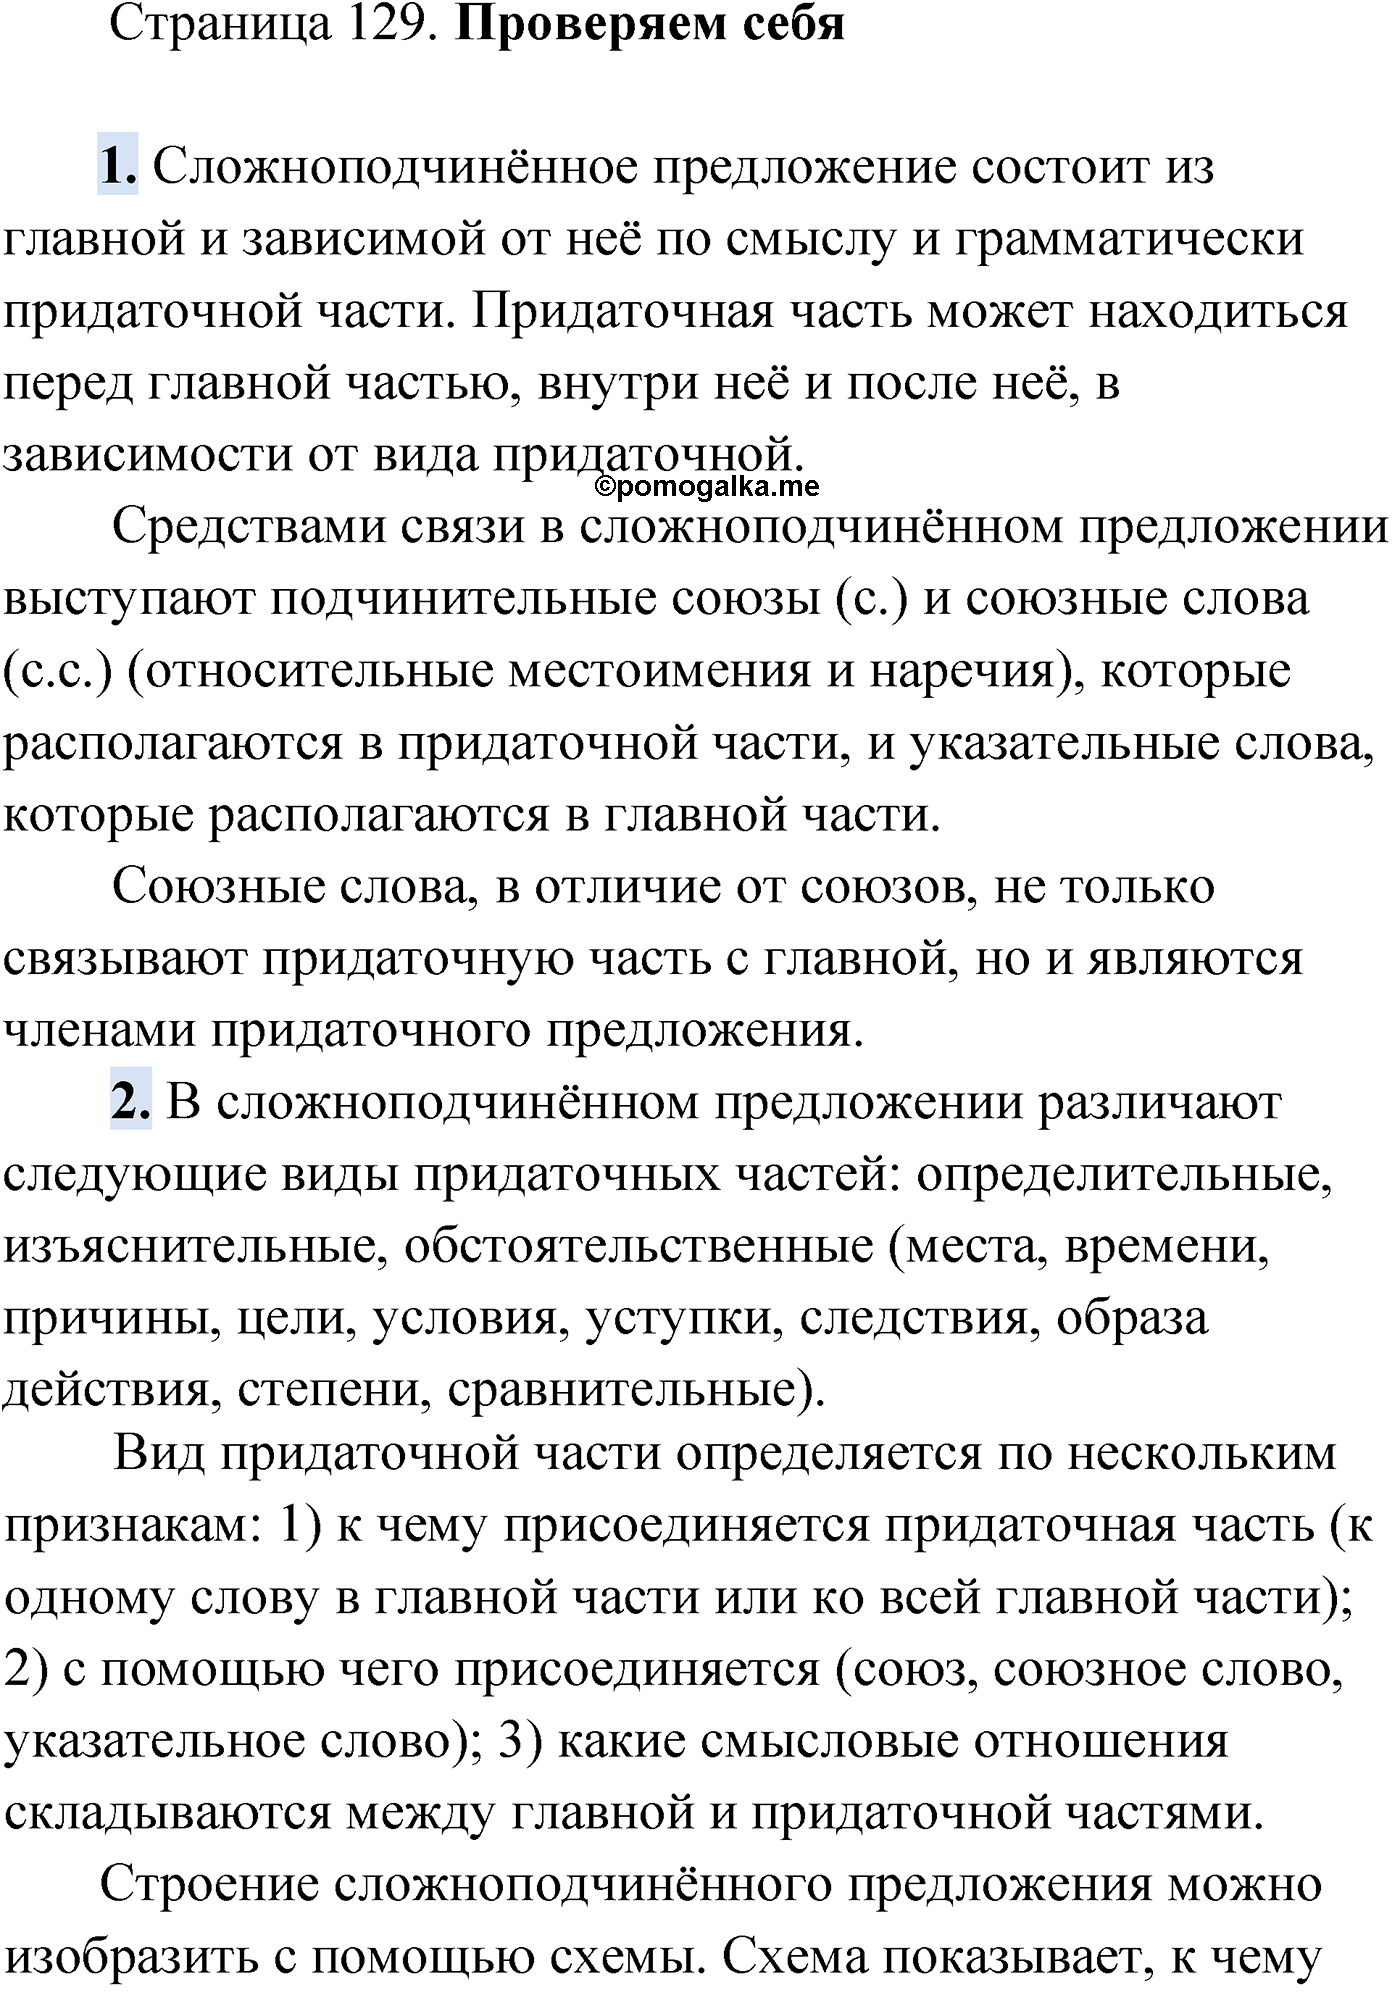 Проверь себя, Страница 129 русский язык 9 класс Мурина 2019 год